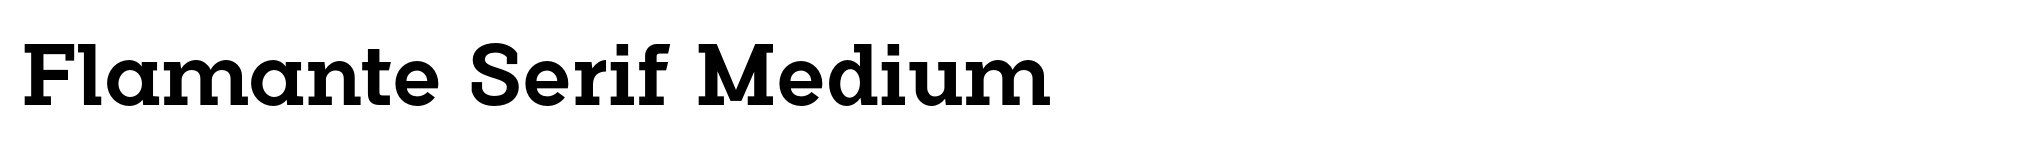 Flamante Serif Medium image